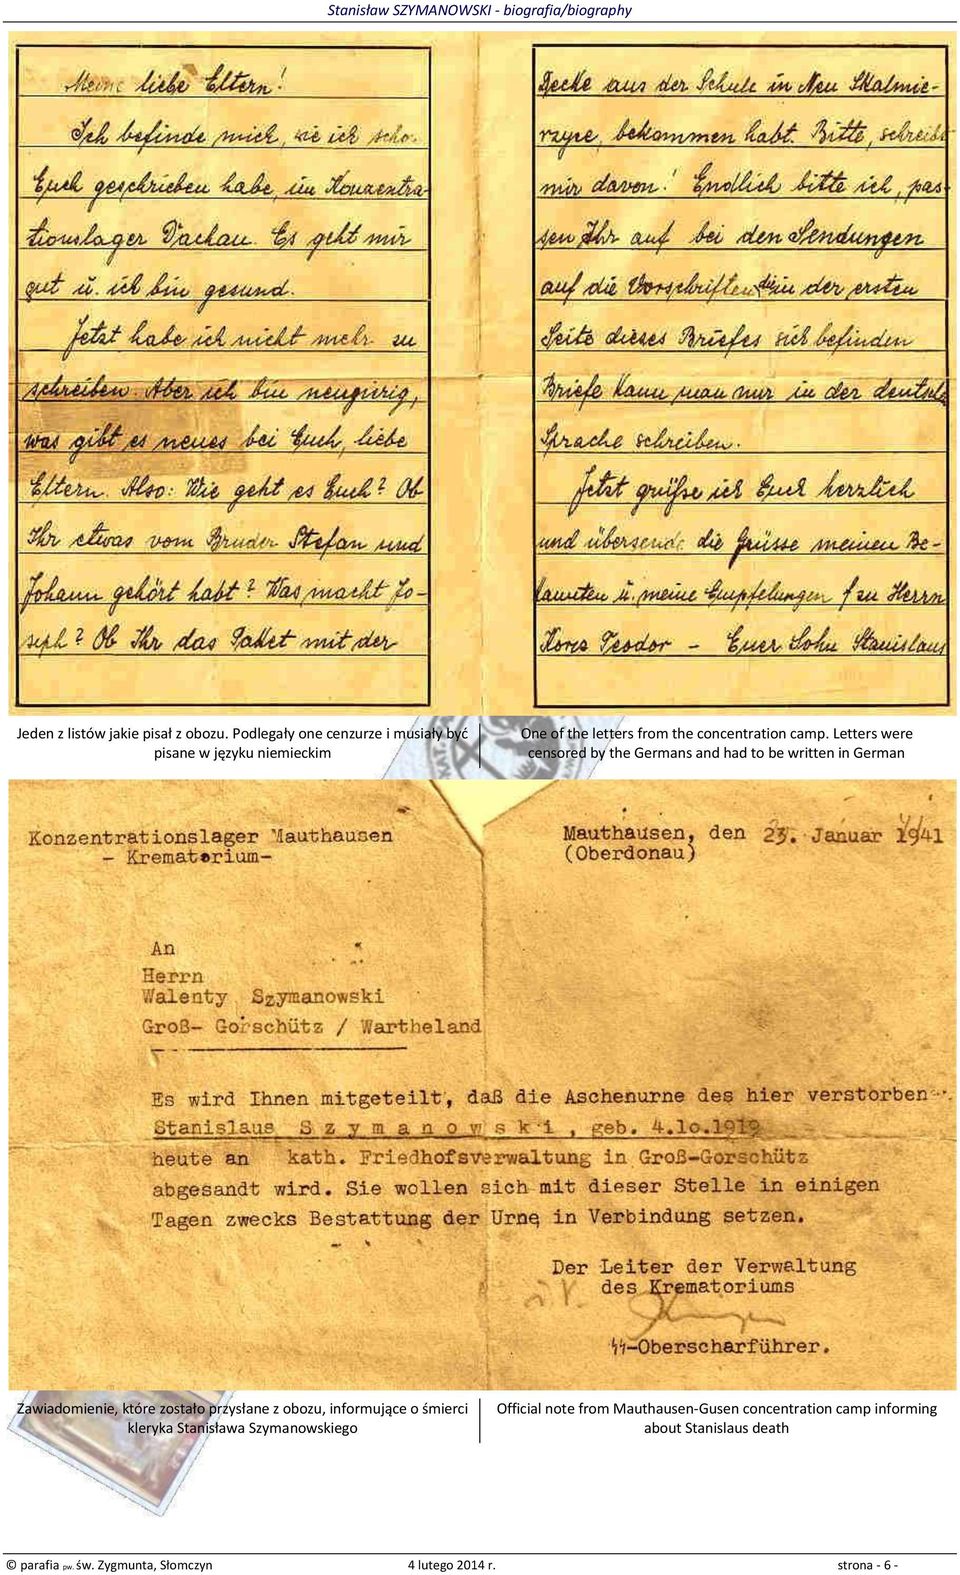 Letters were censored by the Germans and had to be written in German Zawiadomienie, które zostało przysłane z obozu,